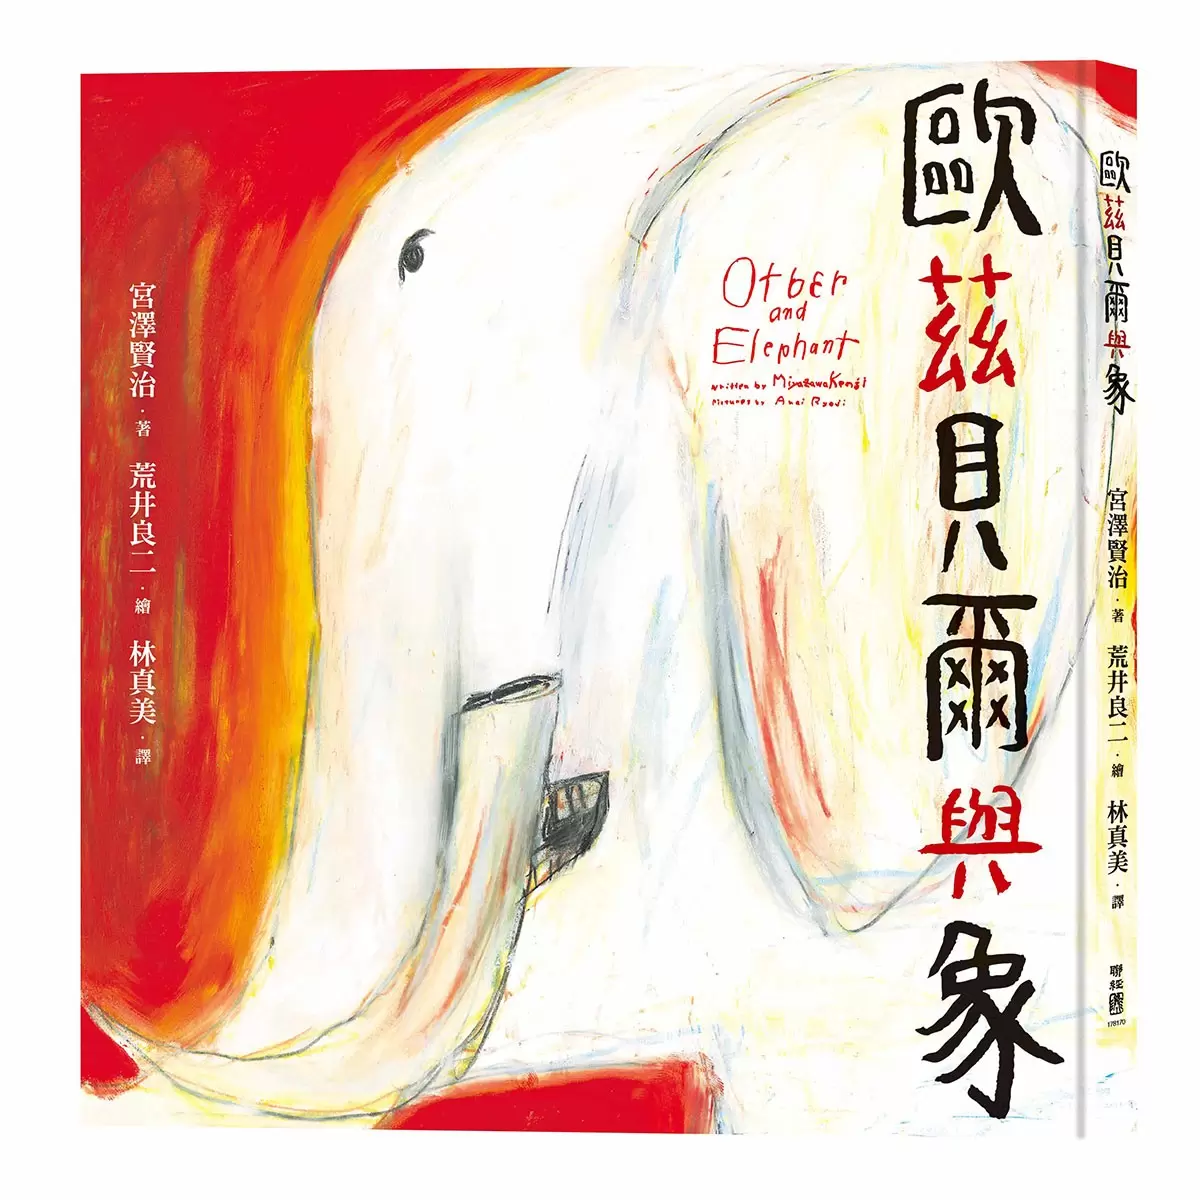 宮澤賢治的繪本散策Ⅱ《夜鷹之星》+《要求很多的餐廳》+《歐茲貝爾與象》+《虔十公園林》+《狼森、笊森和盜森》，附贈「宮澤賢治漫步星空檔案盒」